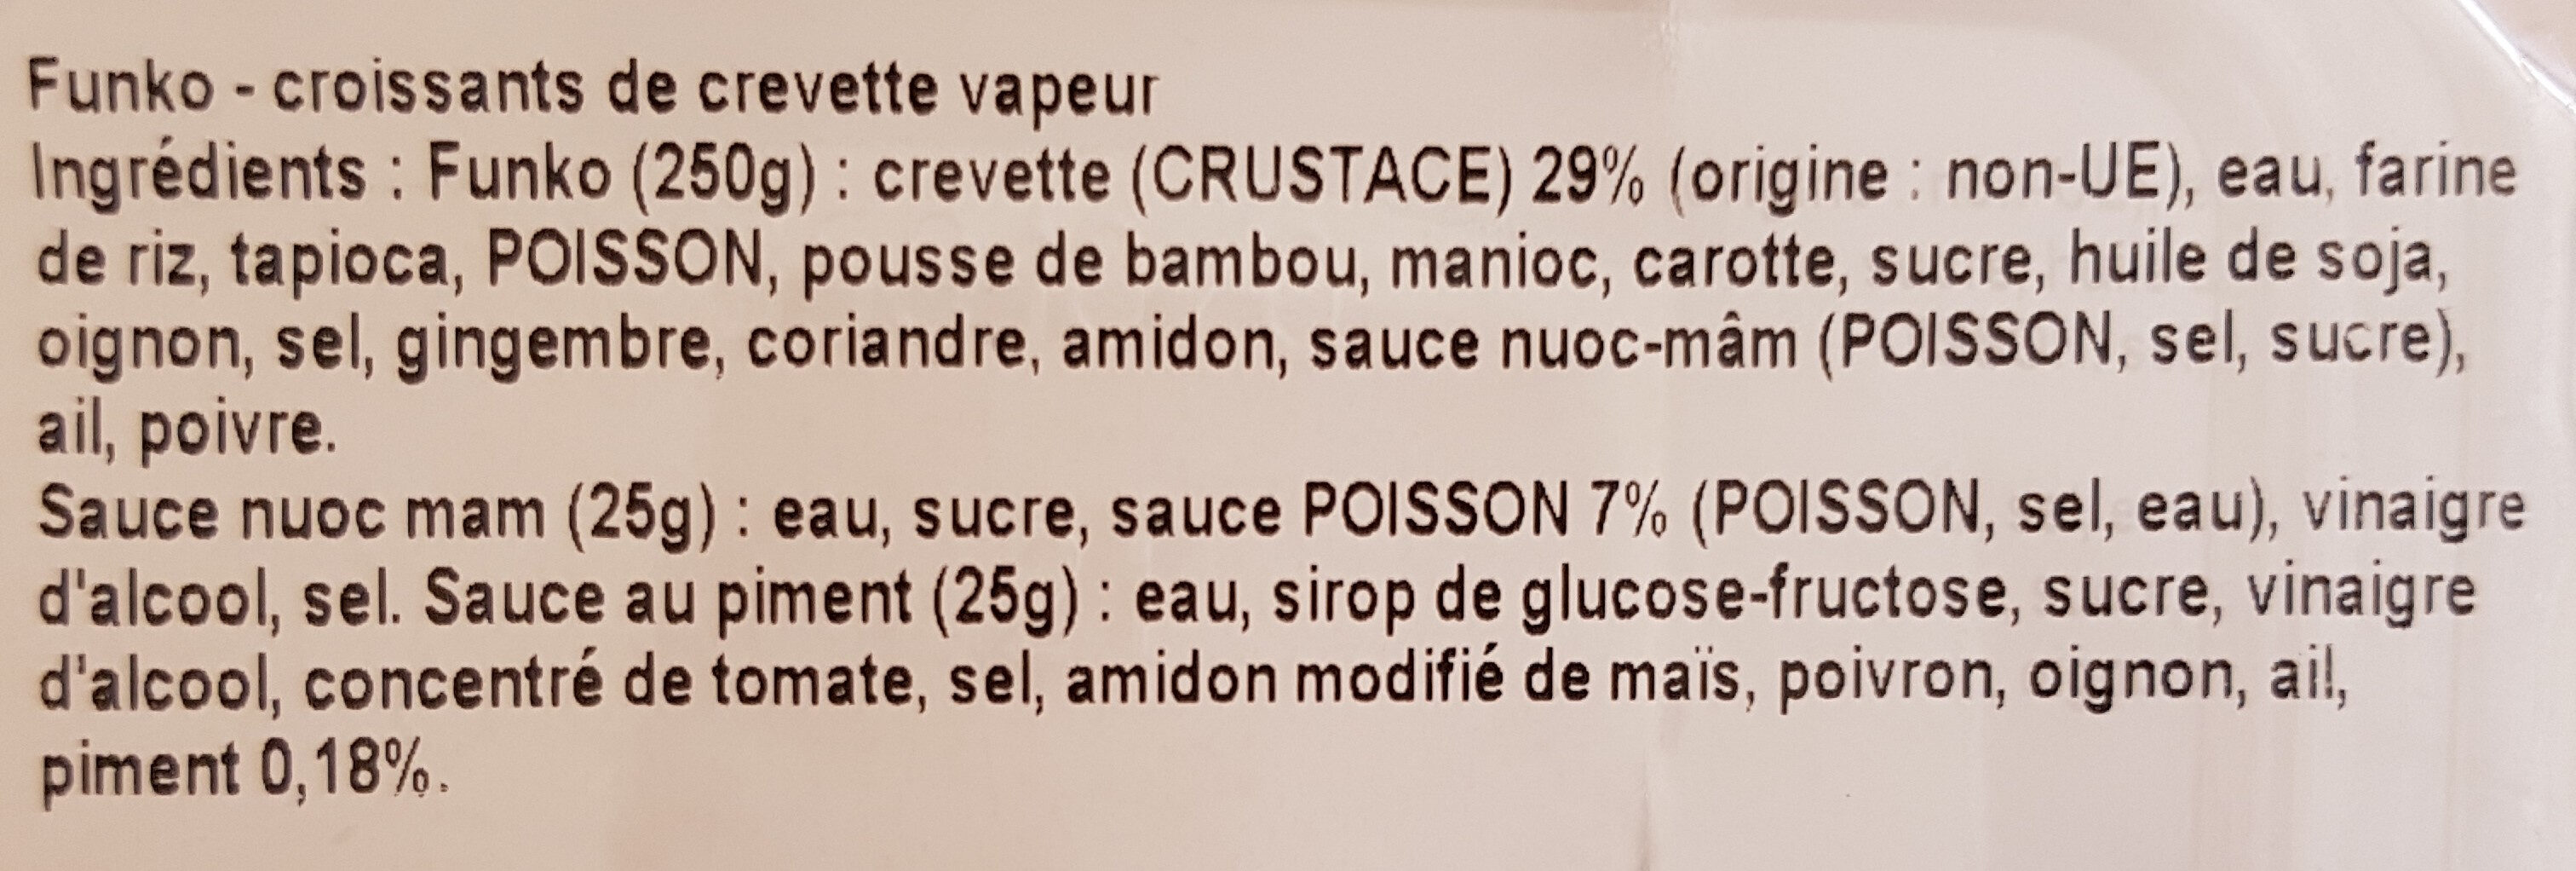 Funko croussants de crevette vapeur avec sauces - Ingredients - fr